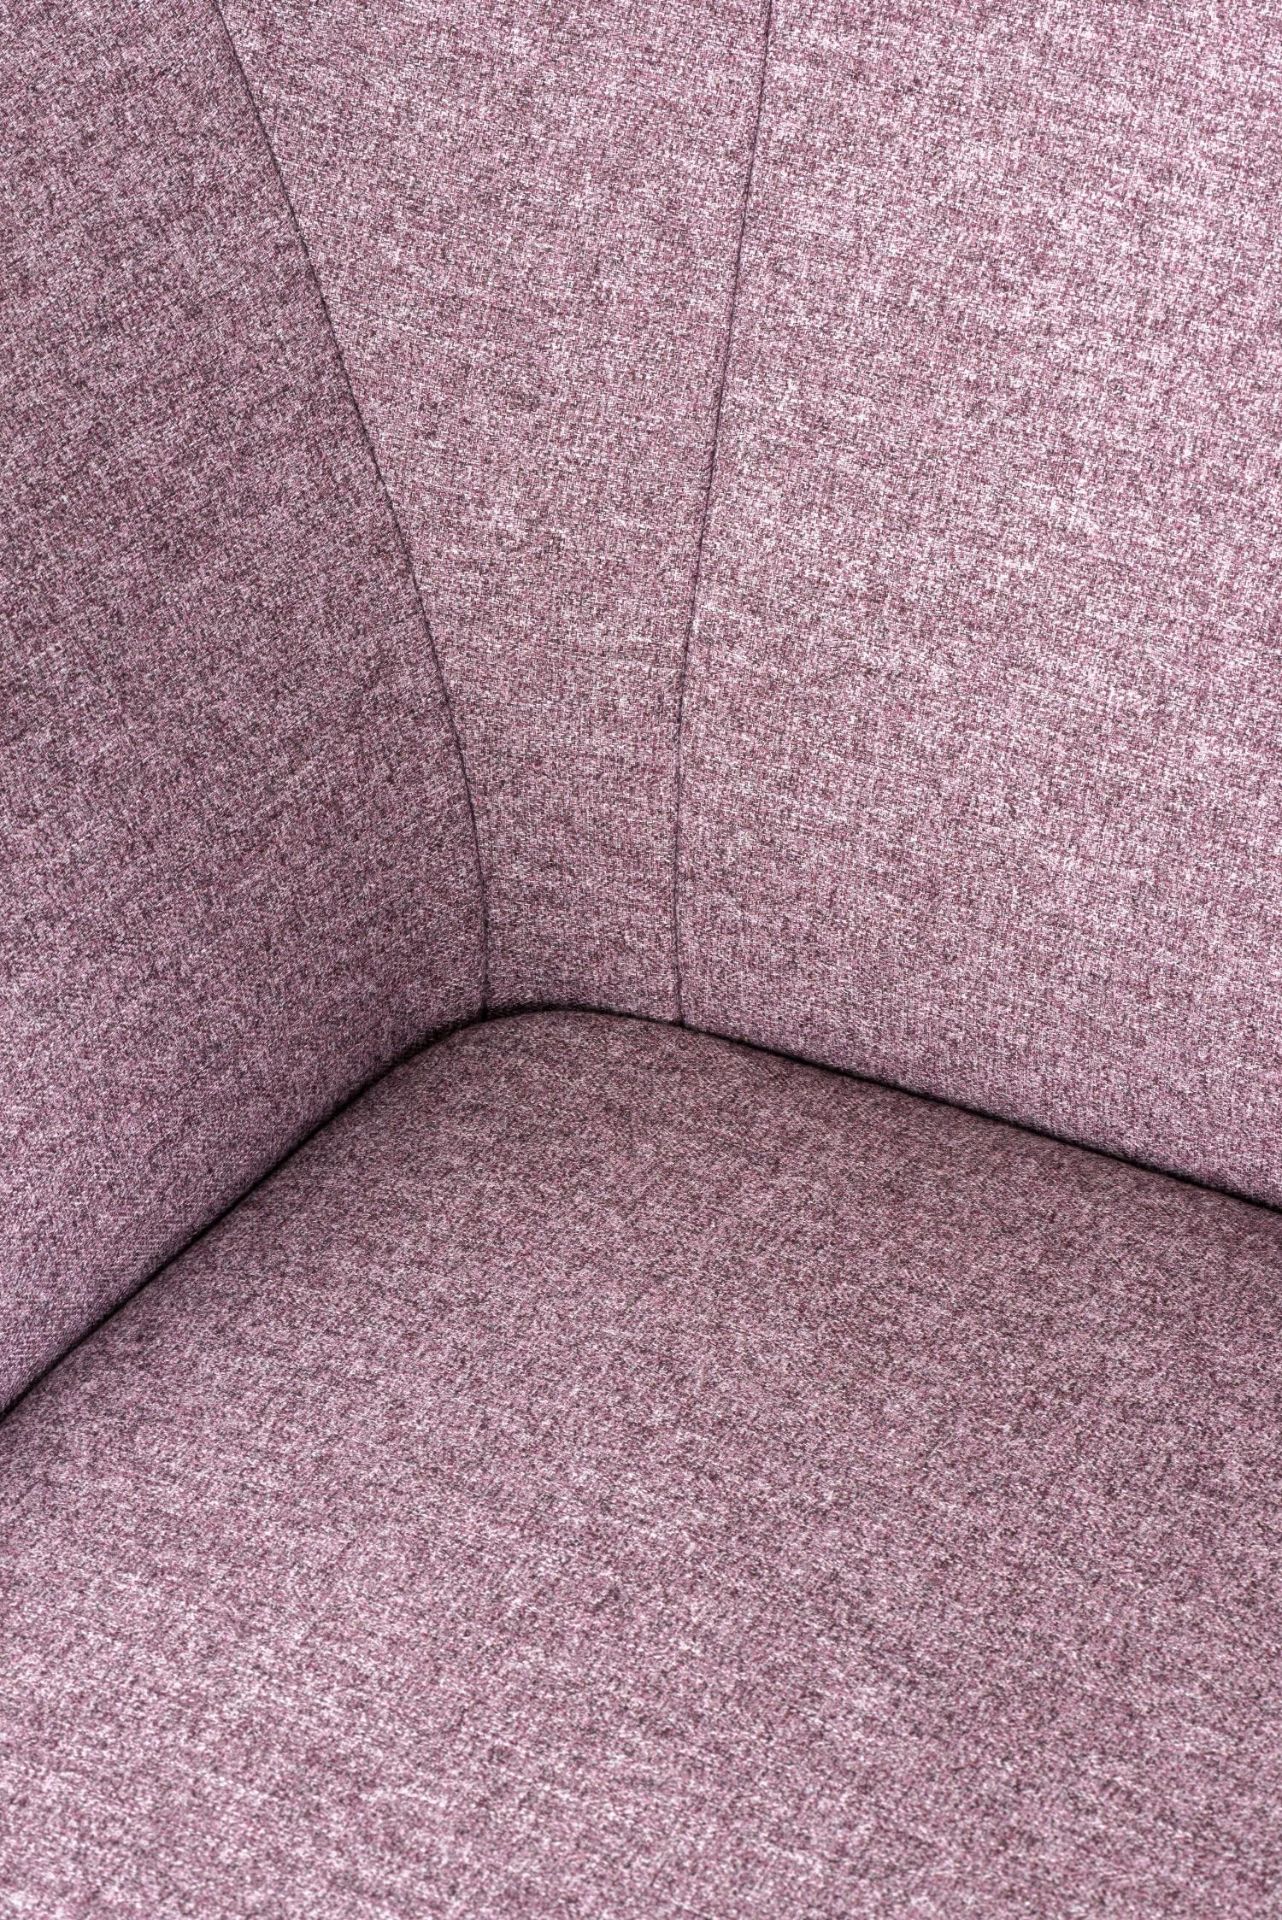 2 fauteuils Freistil 178 recouverts d'un tissu pastel-violet 2044 dont l'un avec [...] - Bild 3 aus 4